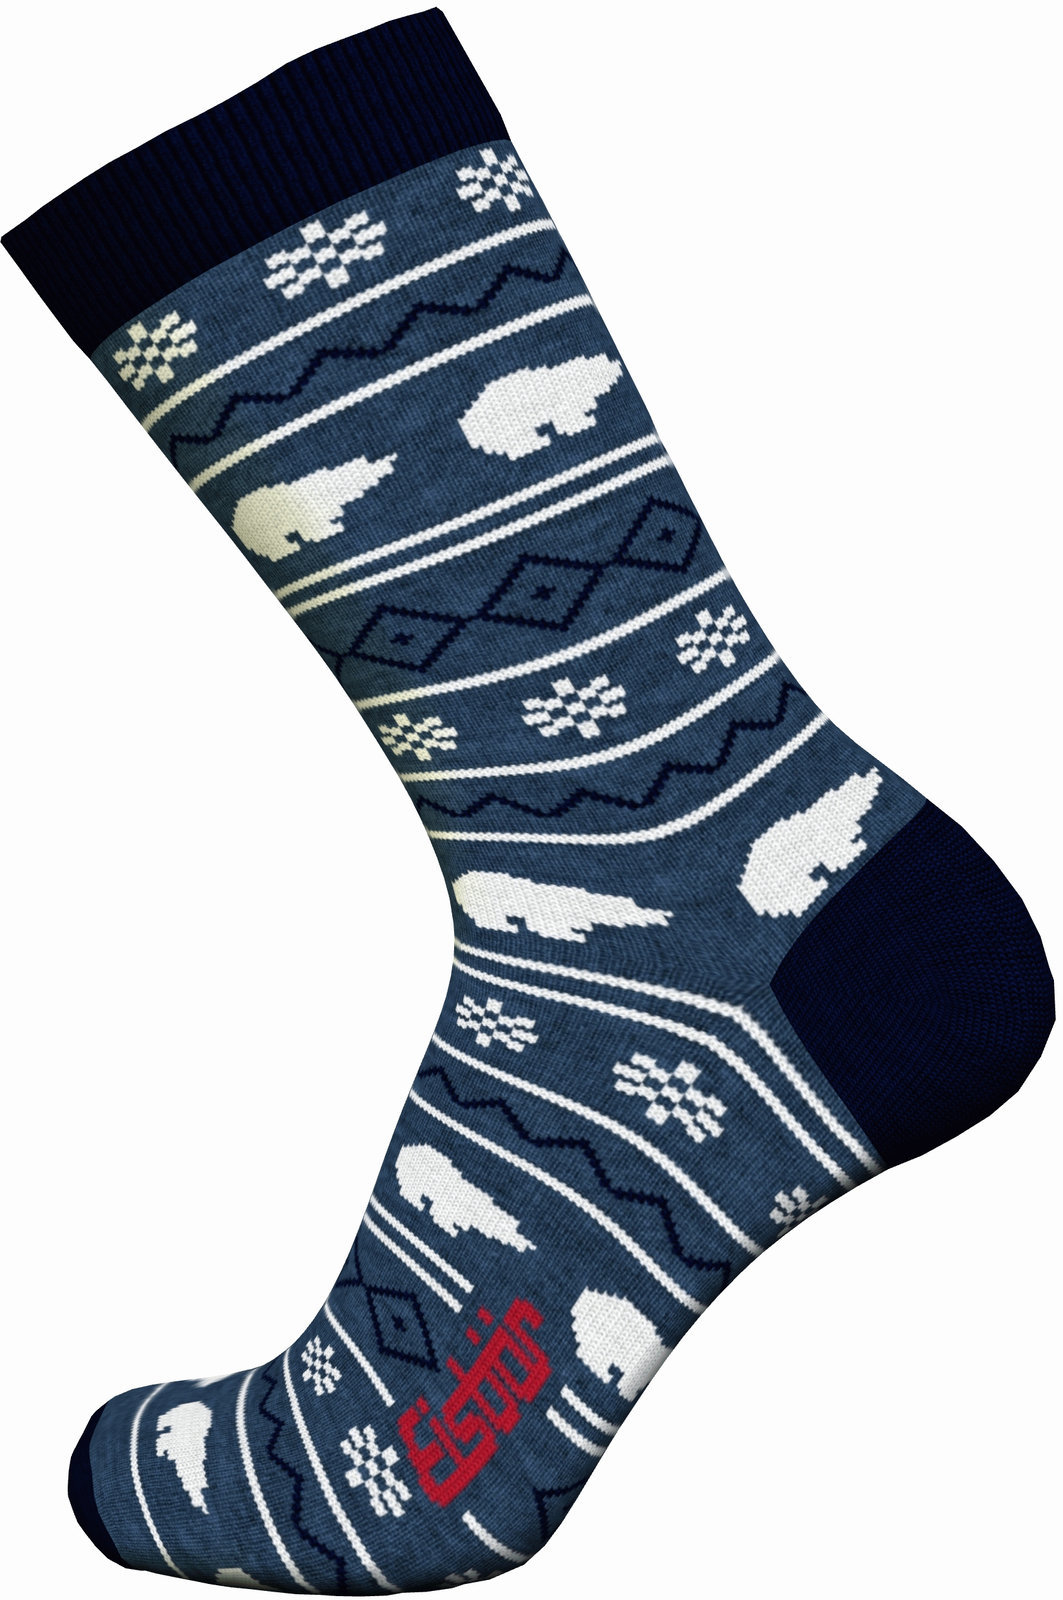 Ski Socks Eisbär Lifestyle Jacquard Avio/Navy-Grey/White 43-45 Ski Socks